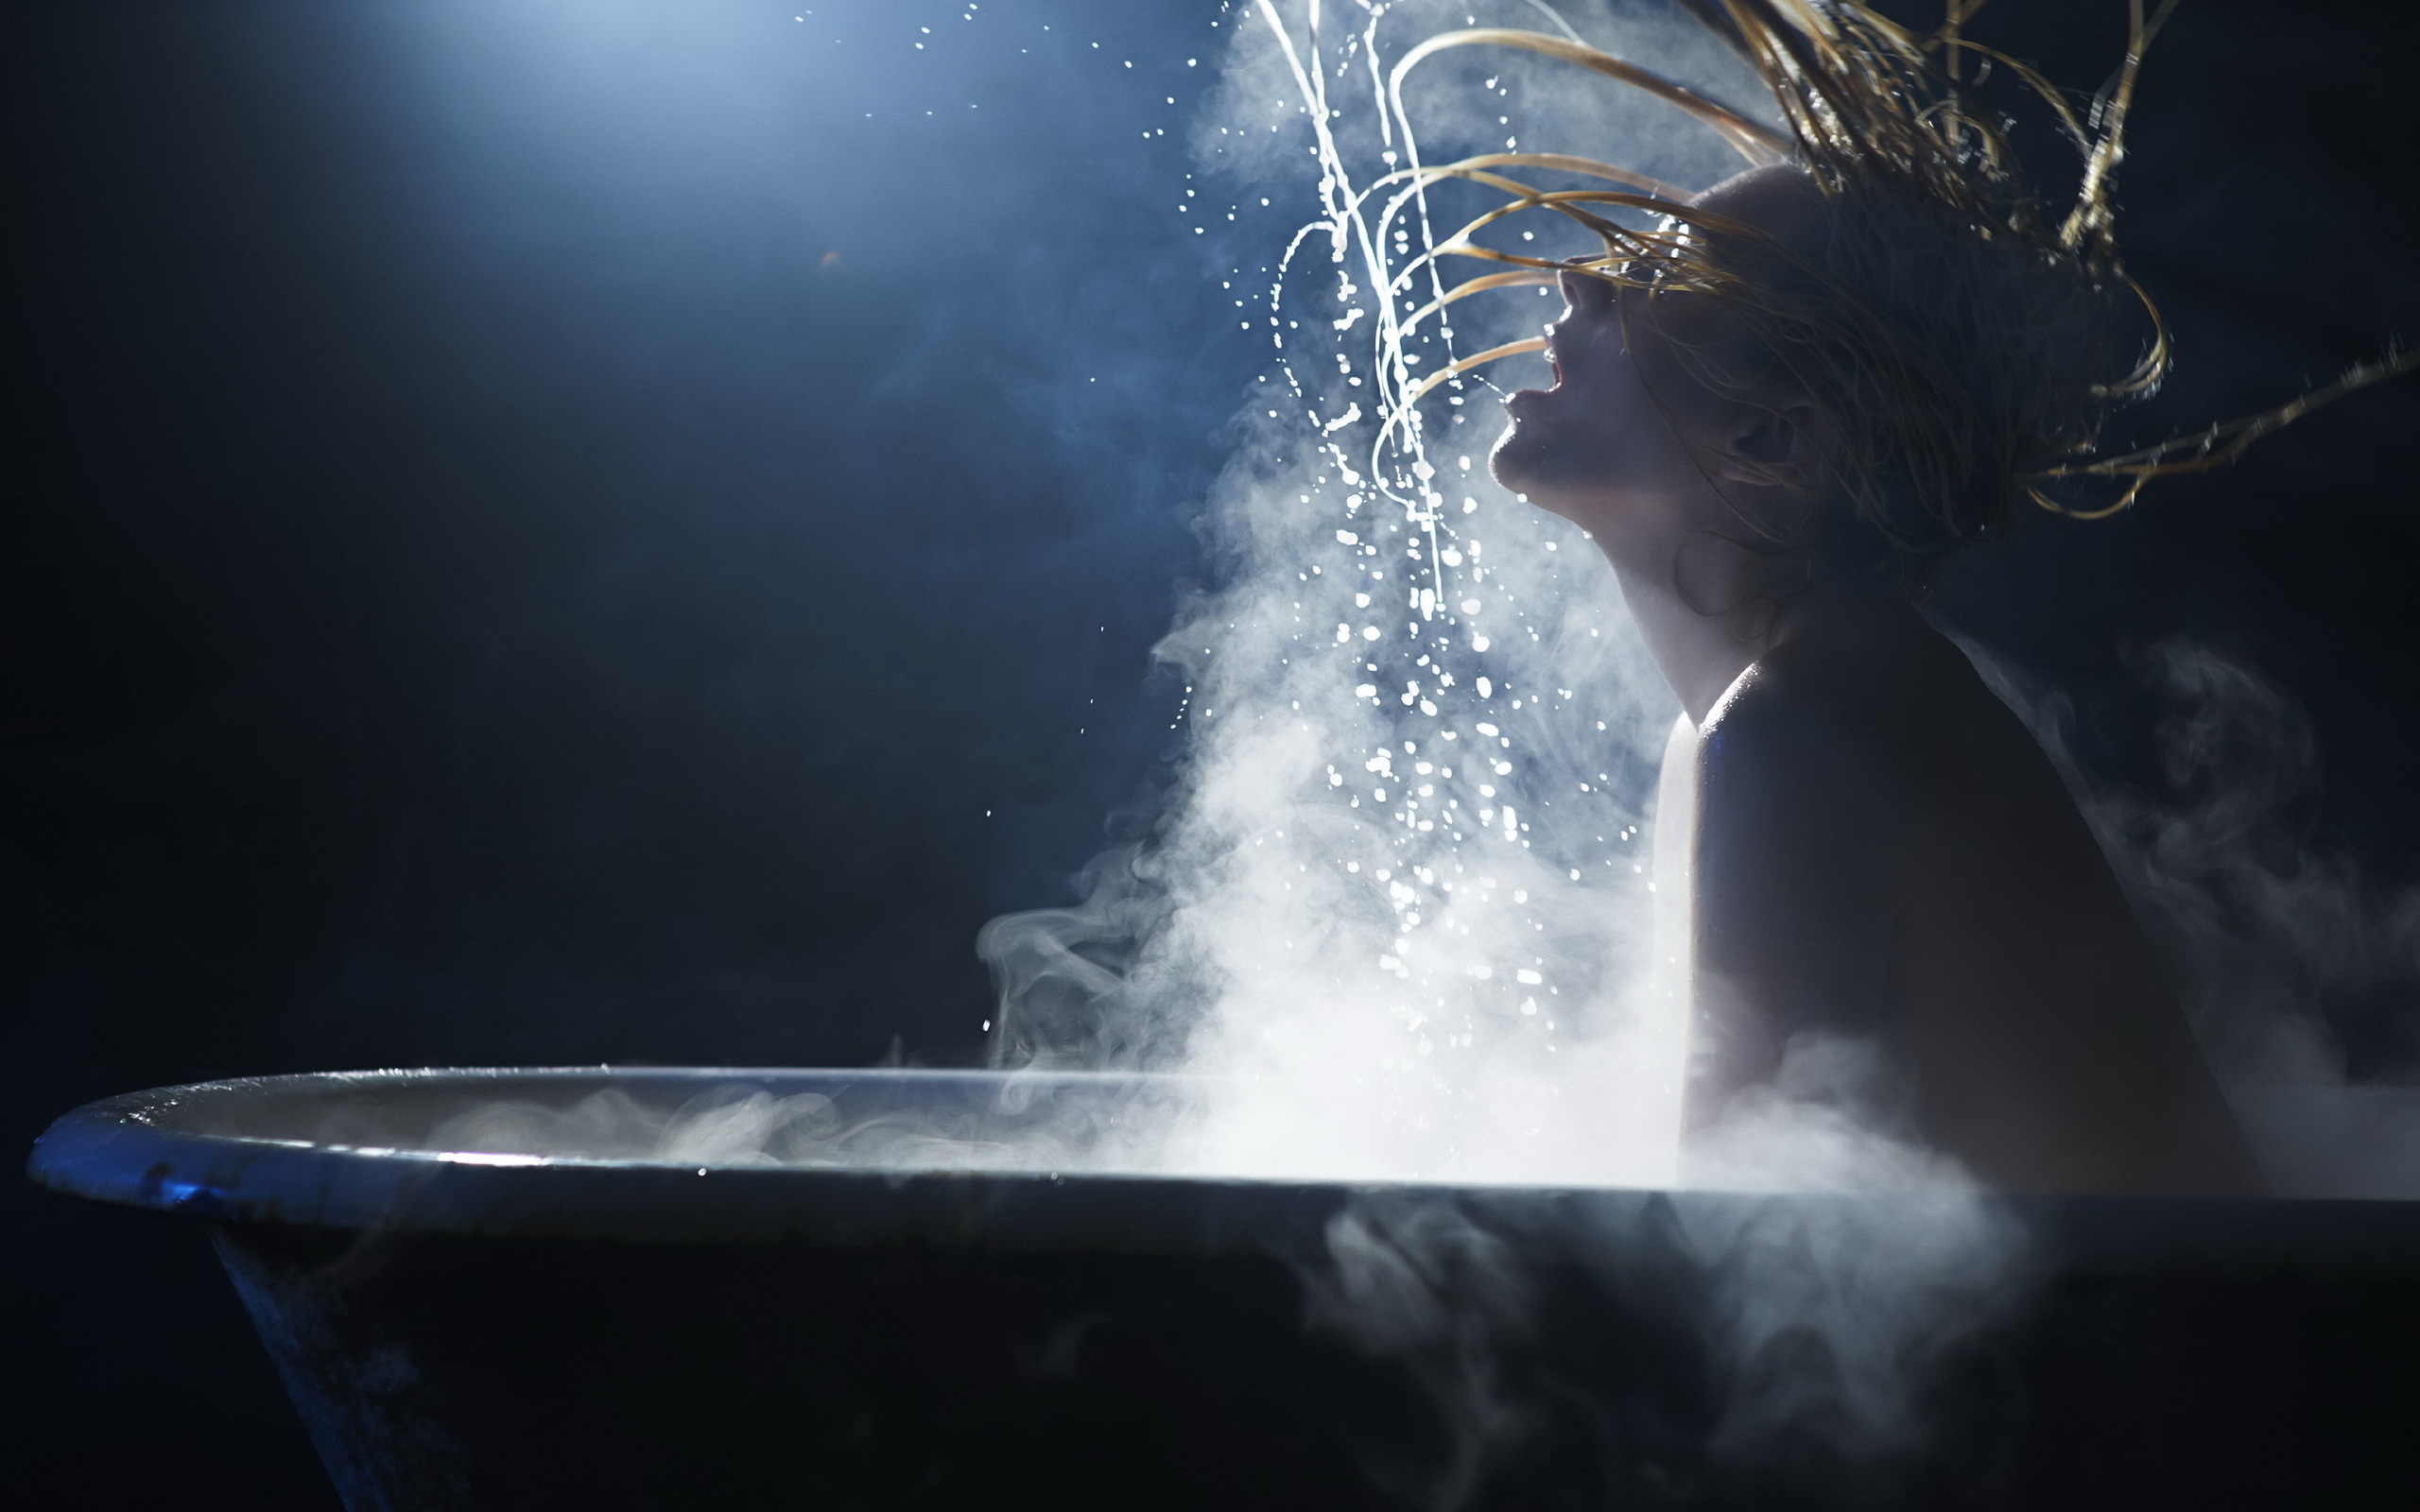 Концерт теплая вода. Девушка и струя воды. Девушка под струей воды. Горячие ванны с паром. Девушка в брызгах воды.